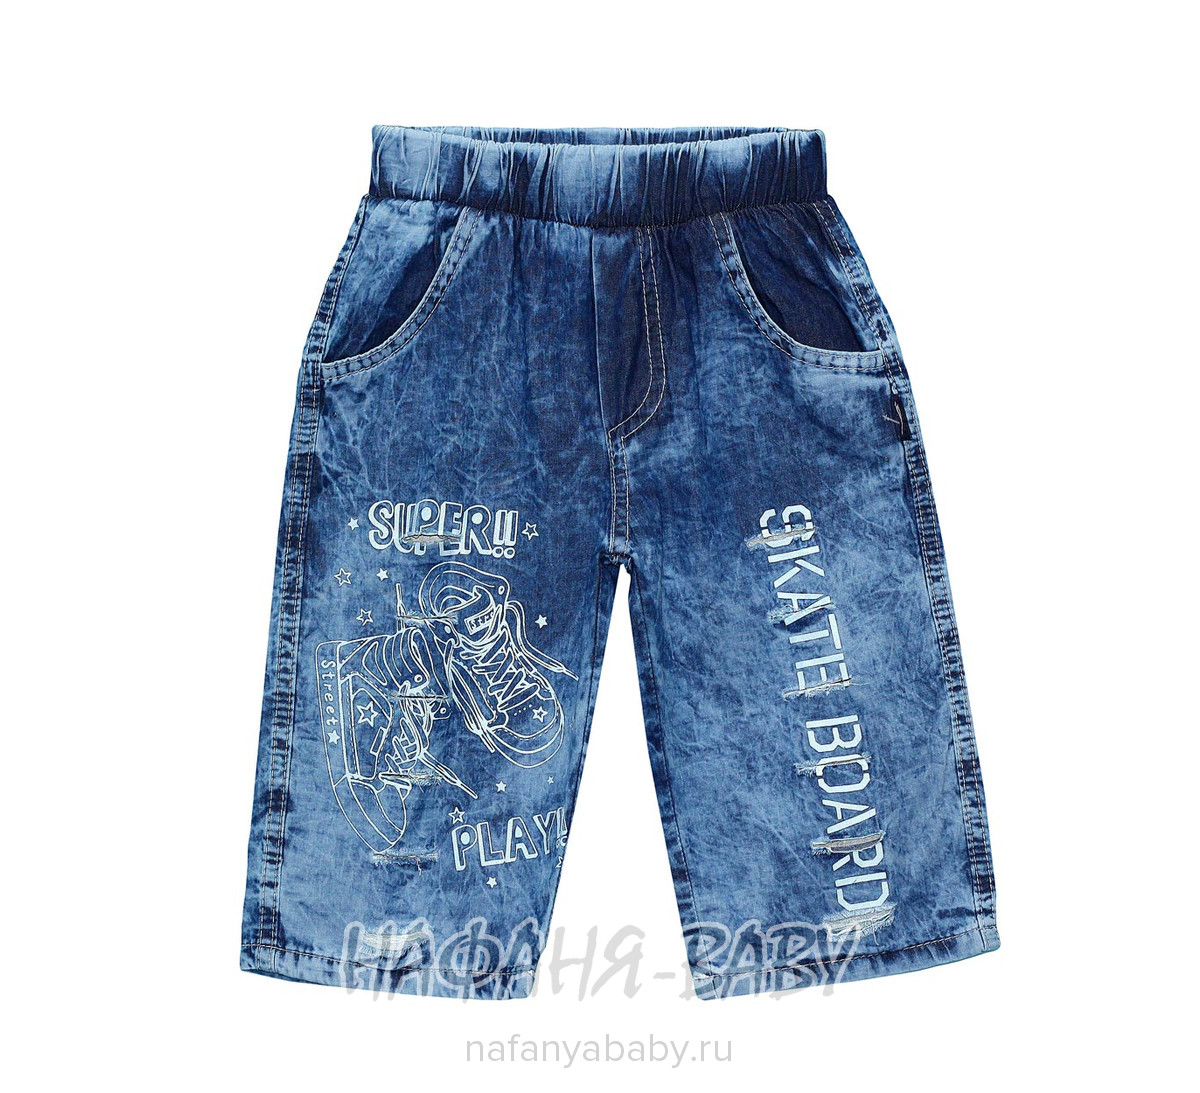 Детские джинсовые шорты AKIRA арт: 2383, 5-9 лет, оптом Турция